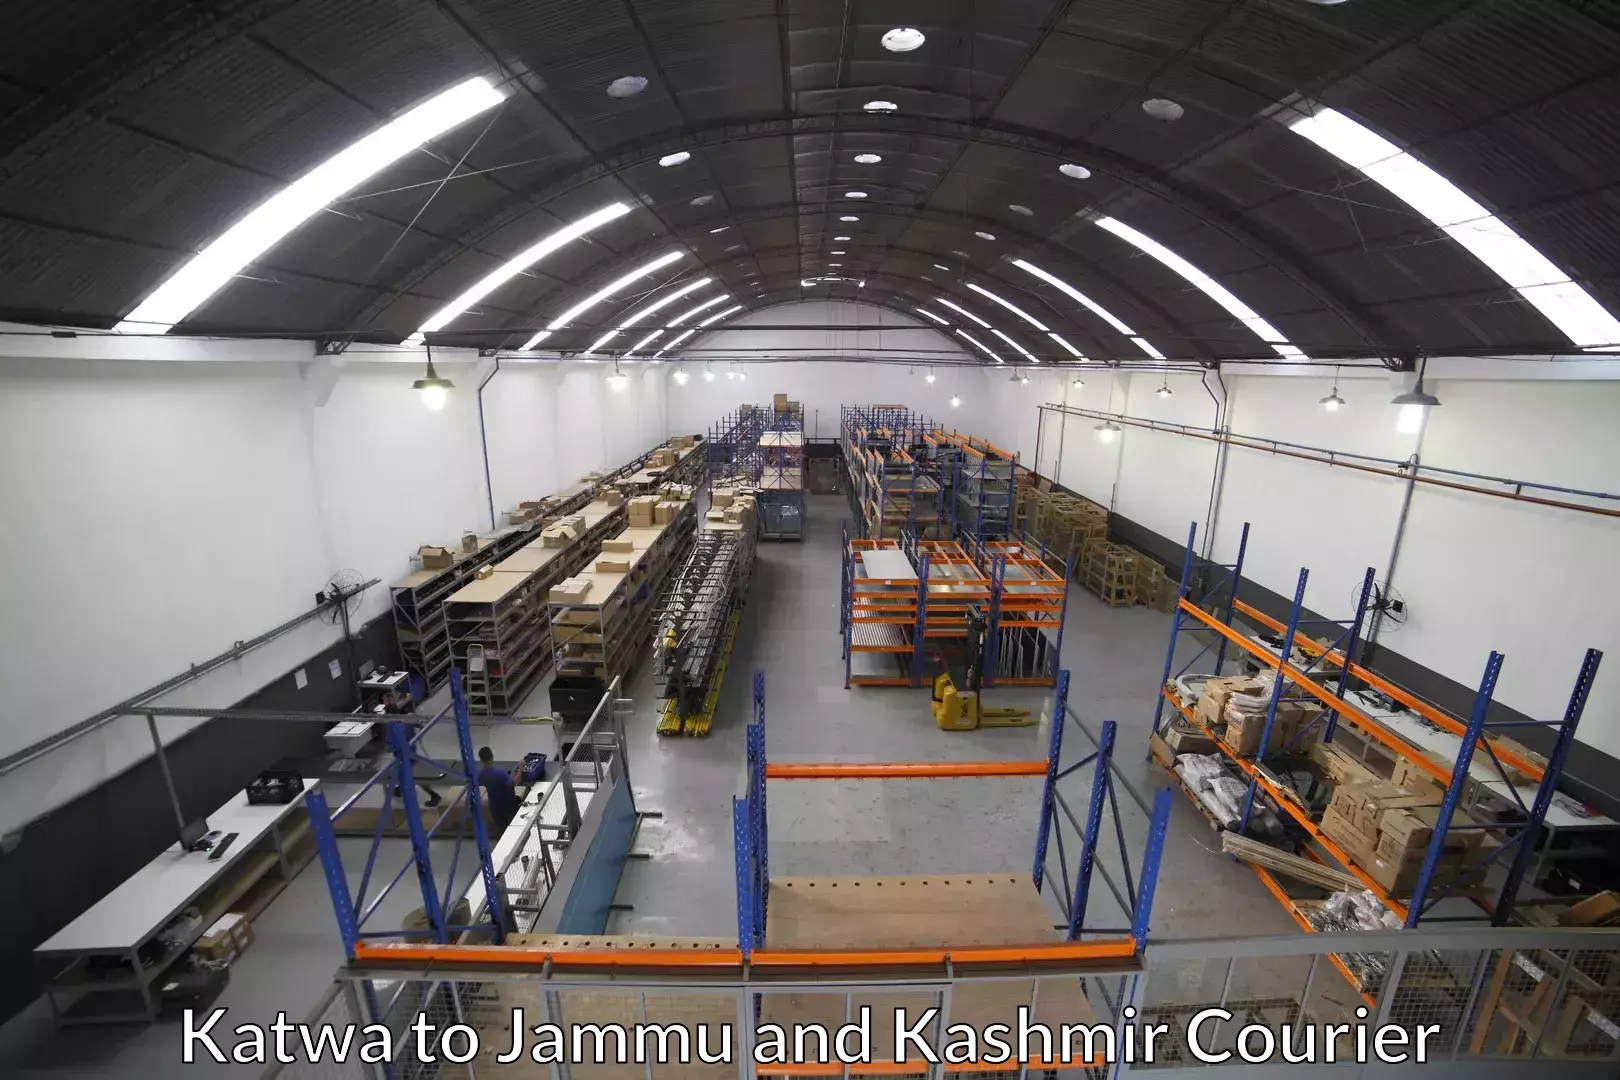 Professional moving company Katwa to Jammu